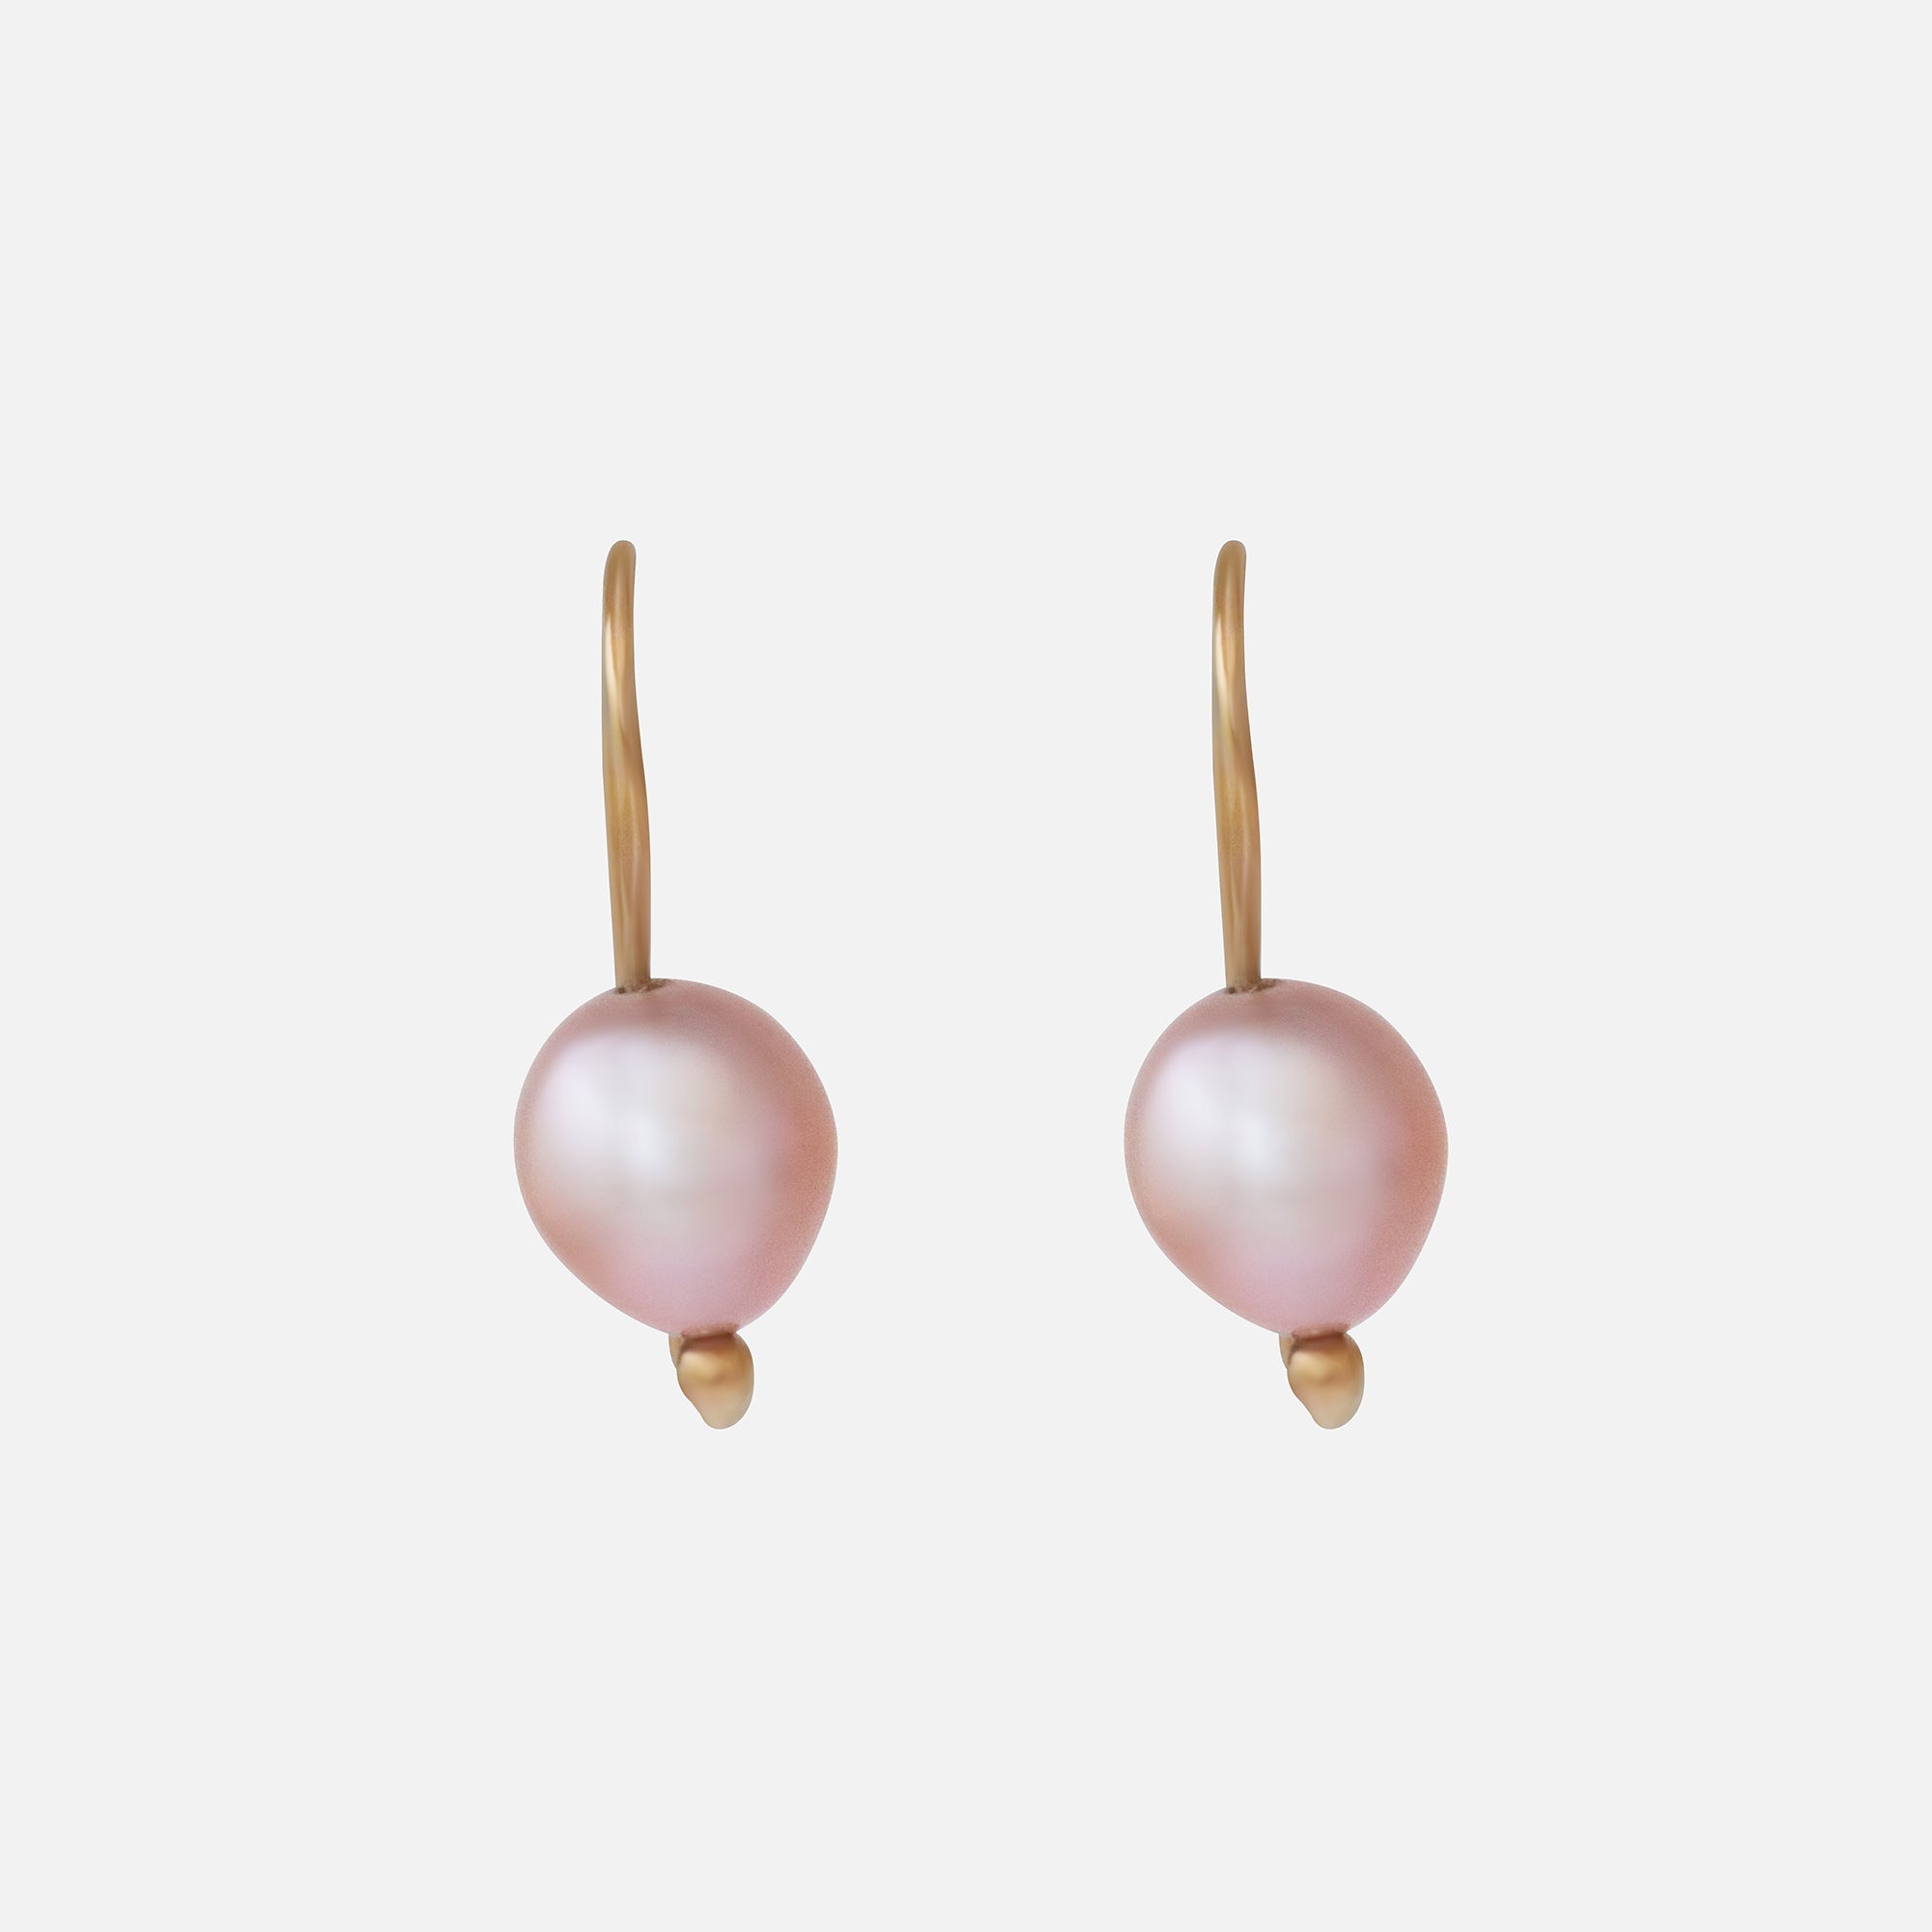 Swan Pearl Earrings By Tricia Kirkland in earrings Category